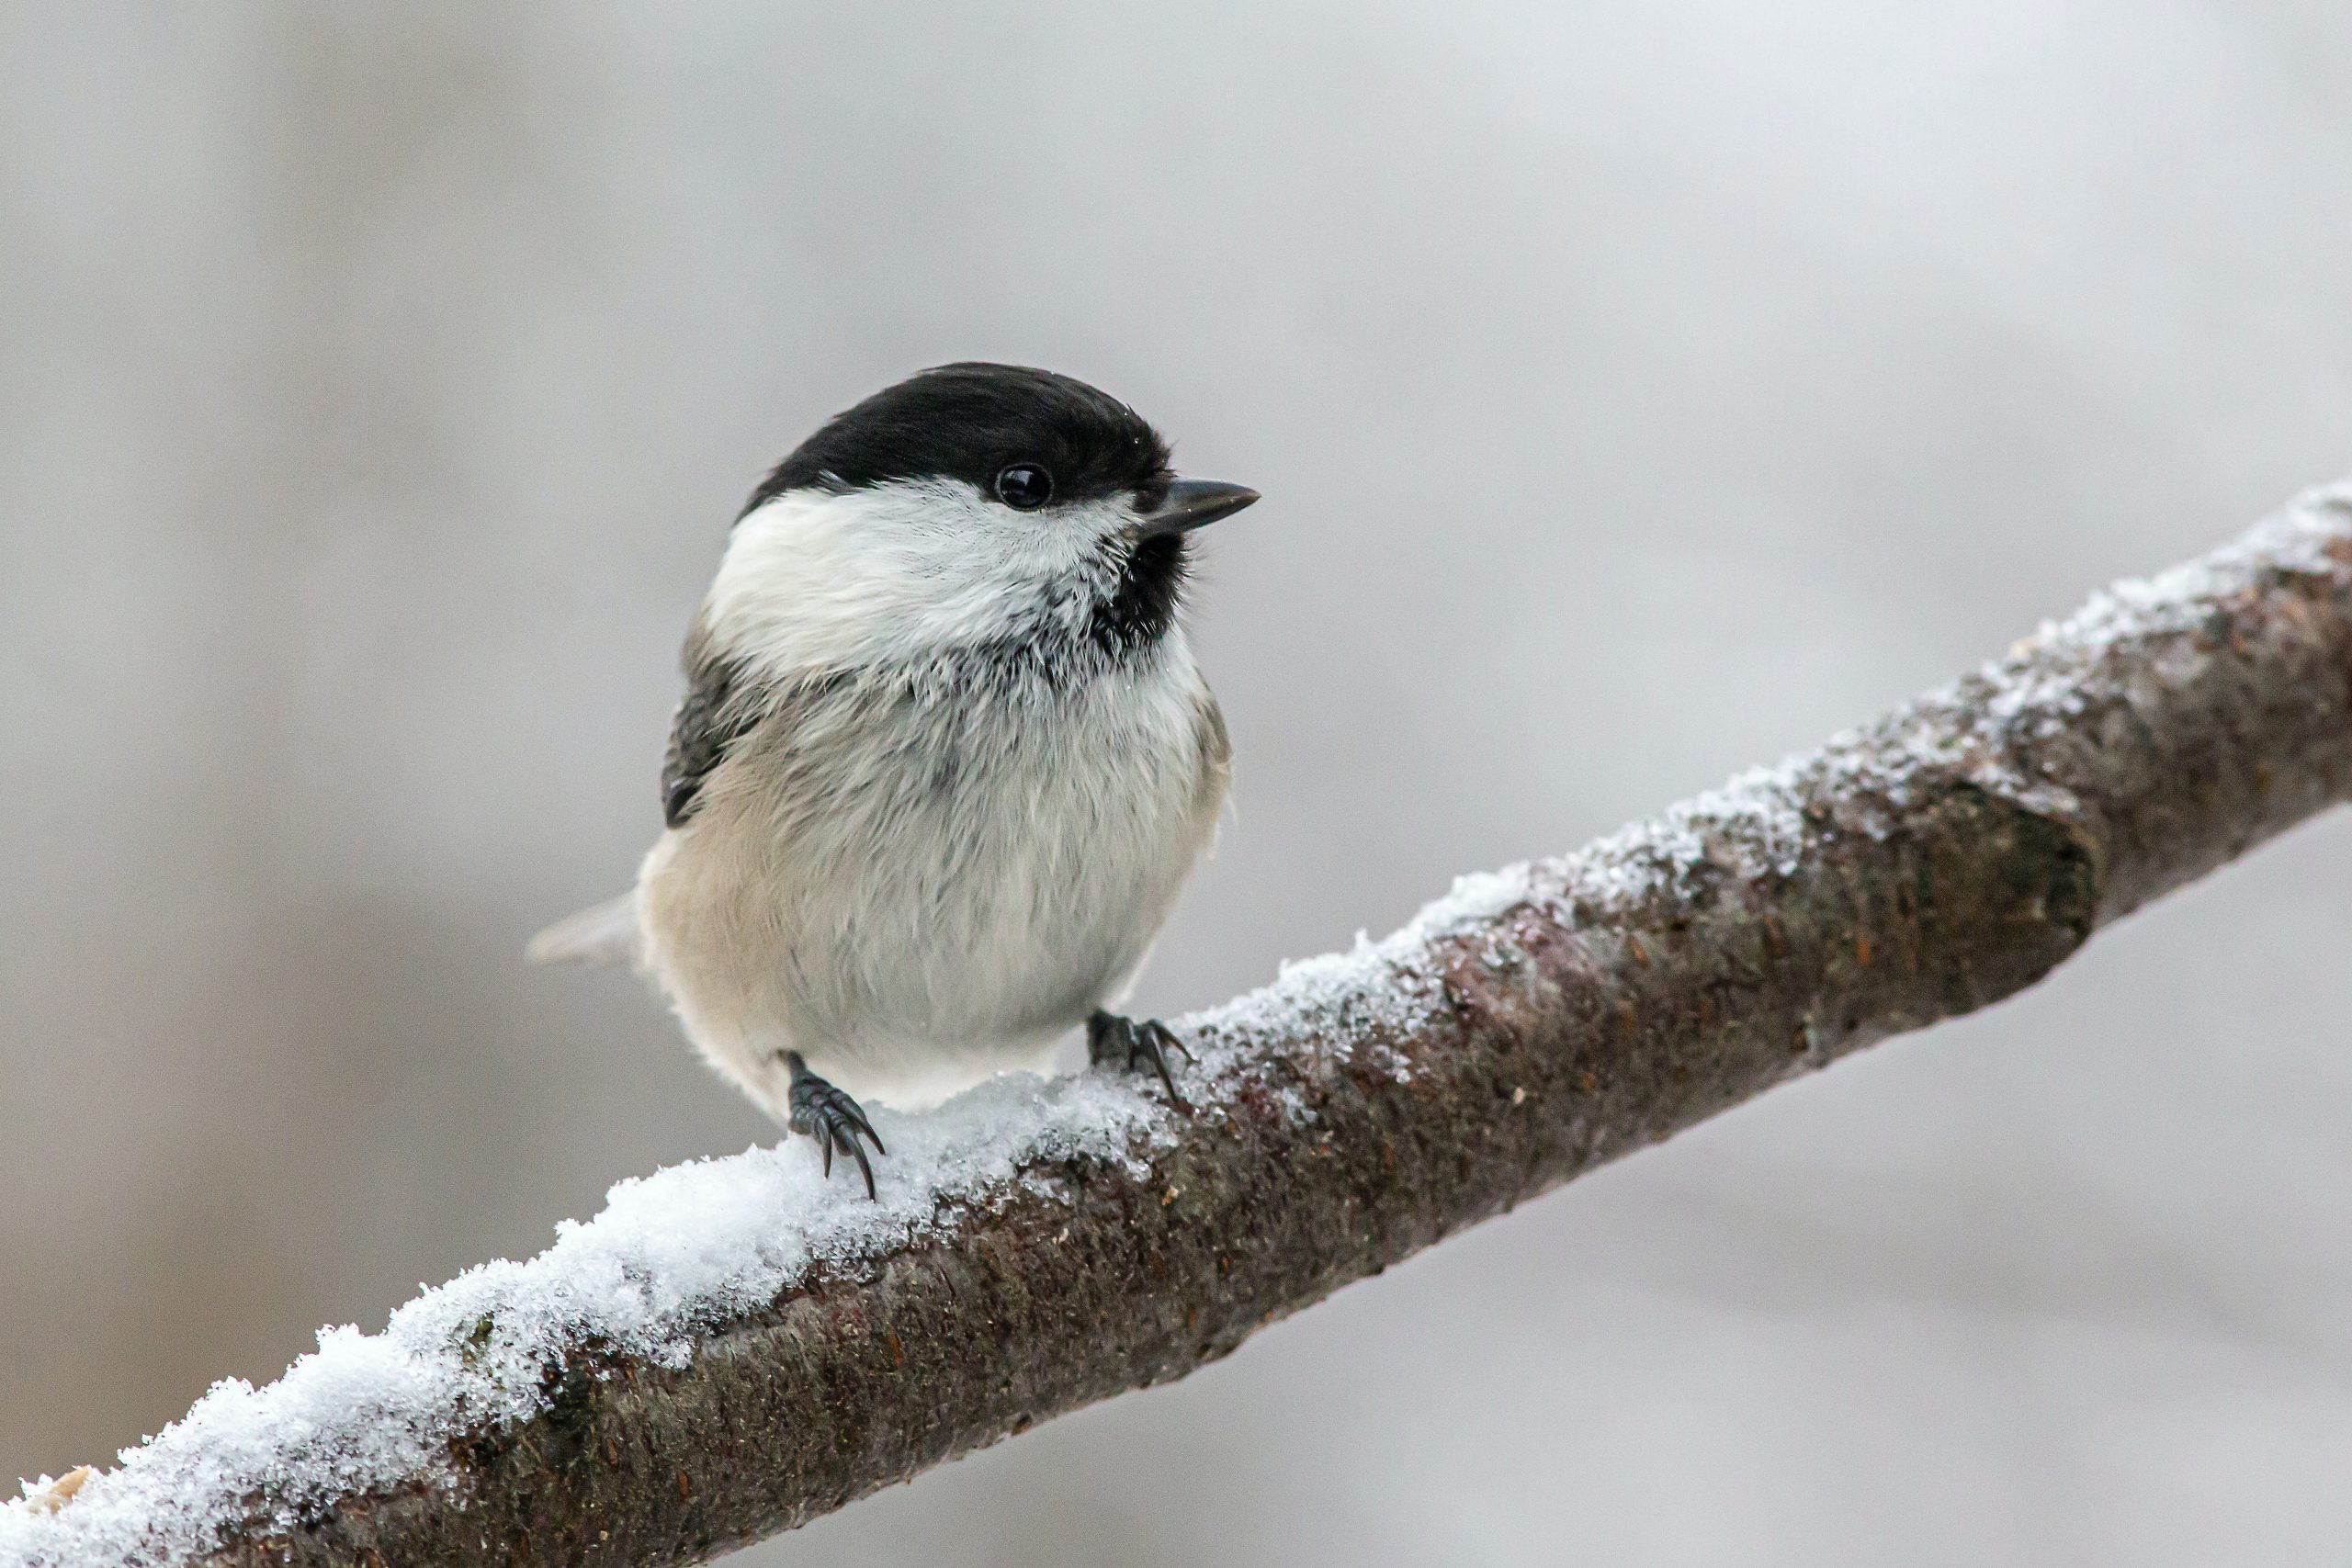 Nourrir les oiseaux en hiver, bonne ou mauvaise idée ? - Edition